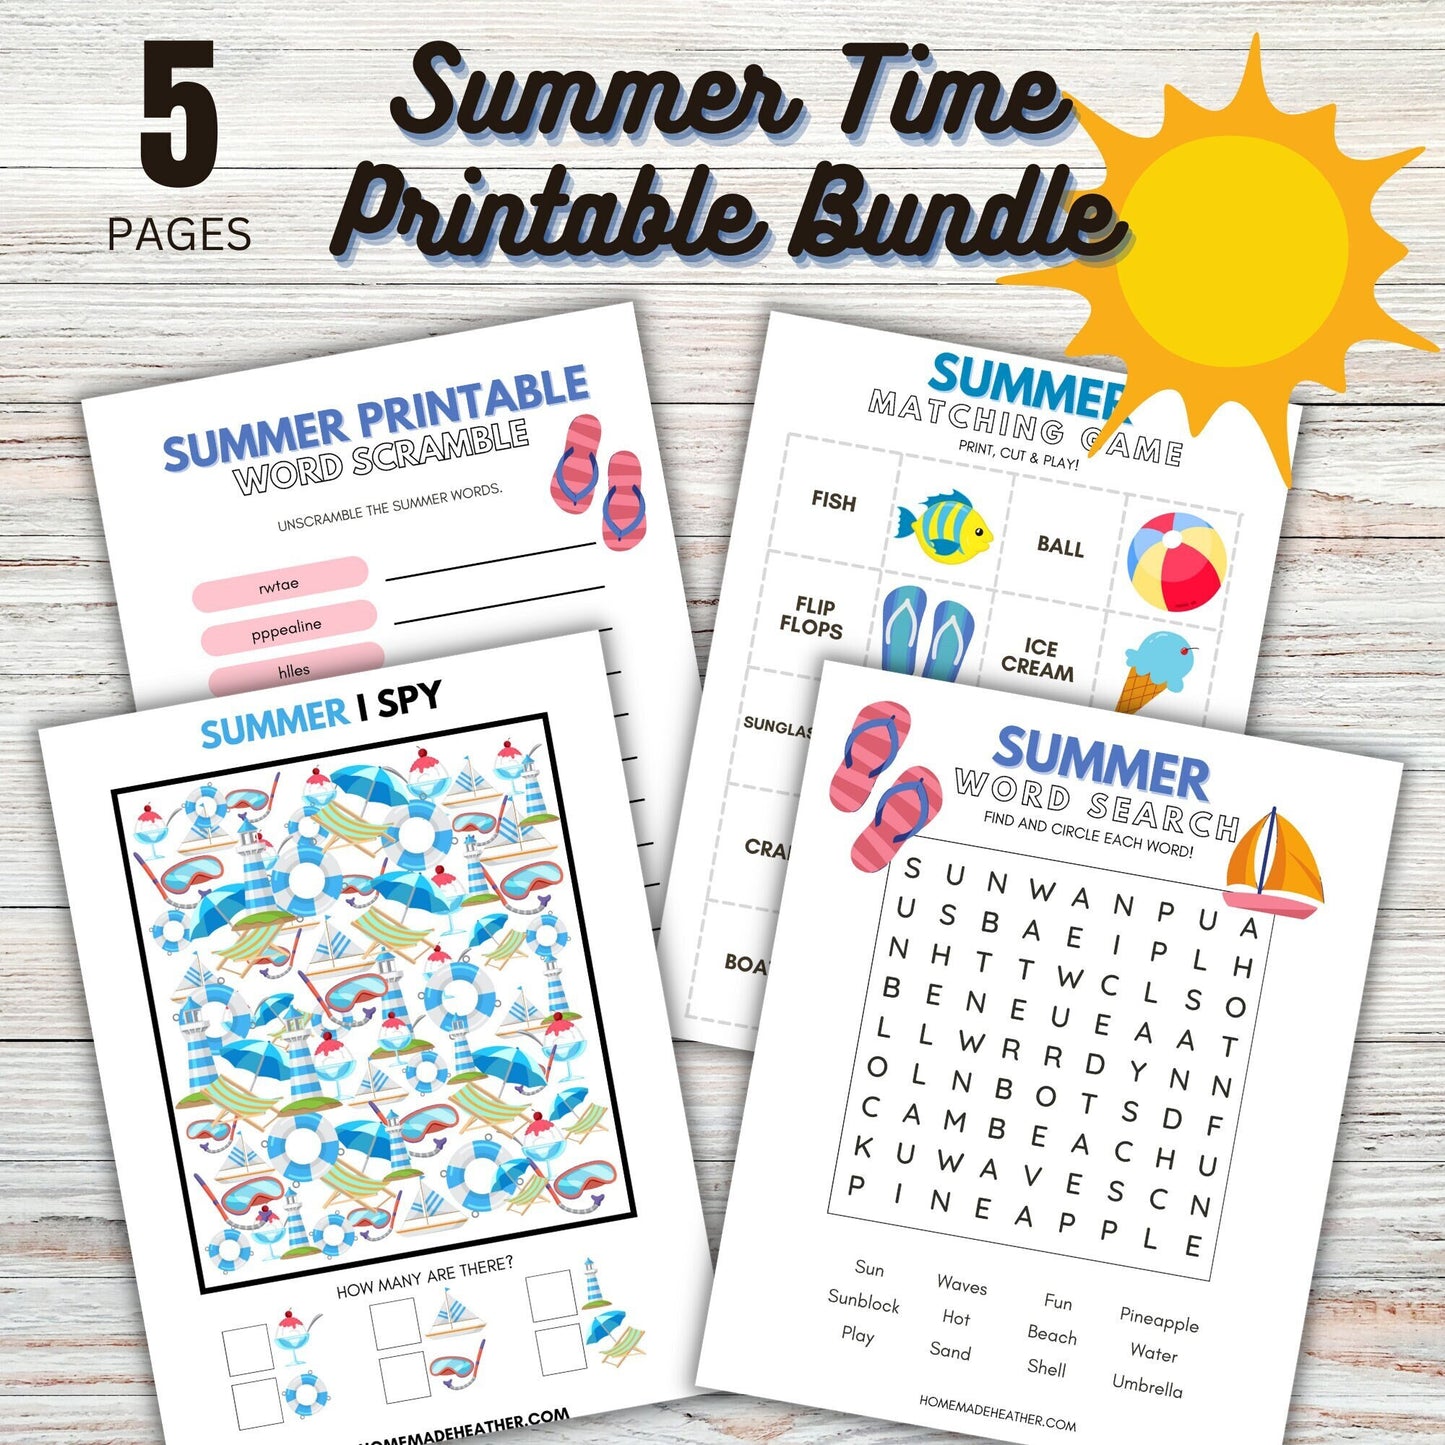 Summer Time Printable Bundle - Summer Time Bundle Printable PDF - Instant Download